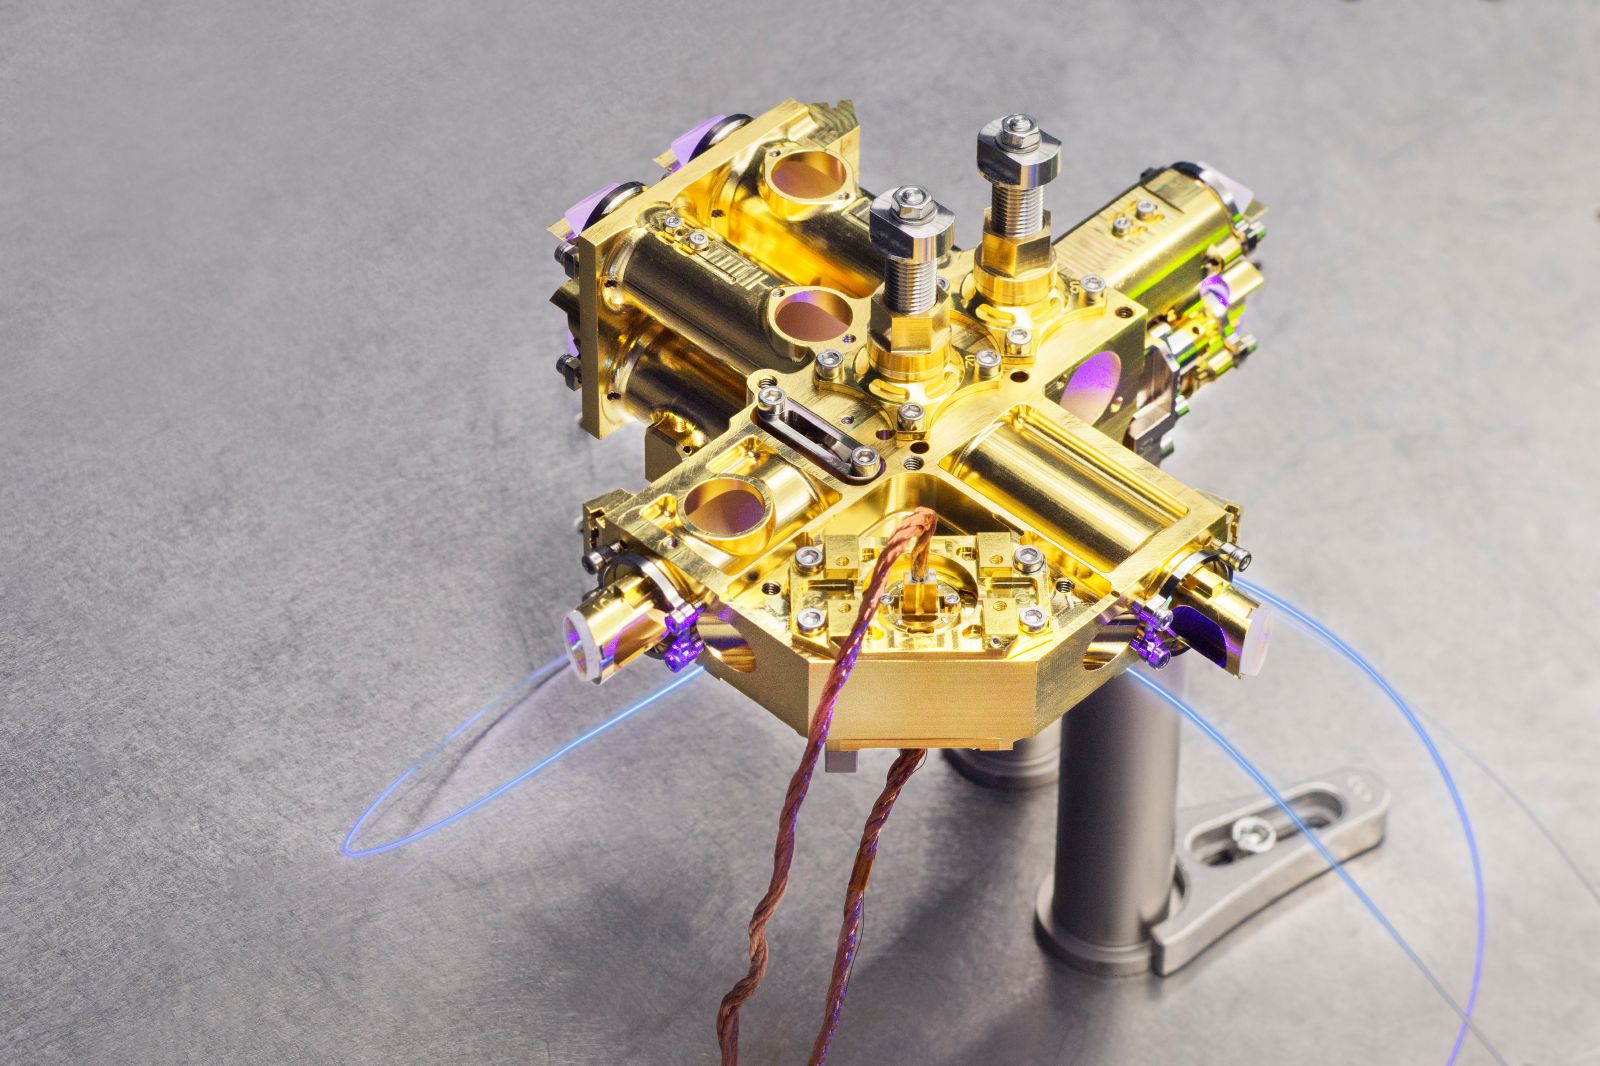 Die Quantenquelle vom Fraunhofer IOF erzeugt verschränkte Lichtquanten und sendet sie von einem Satelliten auf die Erde. Dort dienen sie der sicheren Schlüsselverteilung bei der Verschlüsselung von Daten.